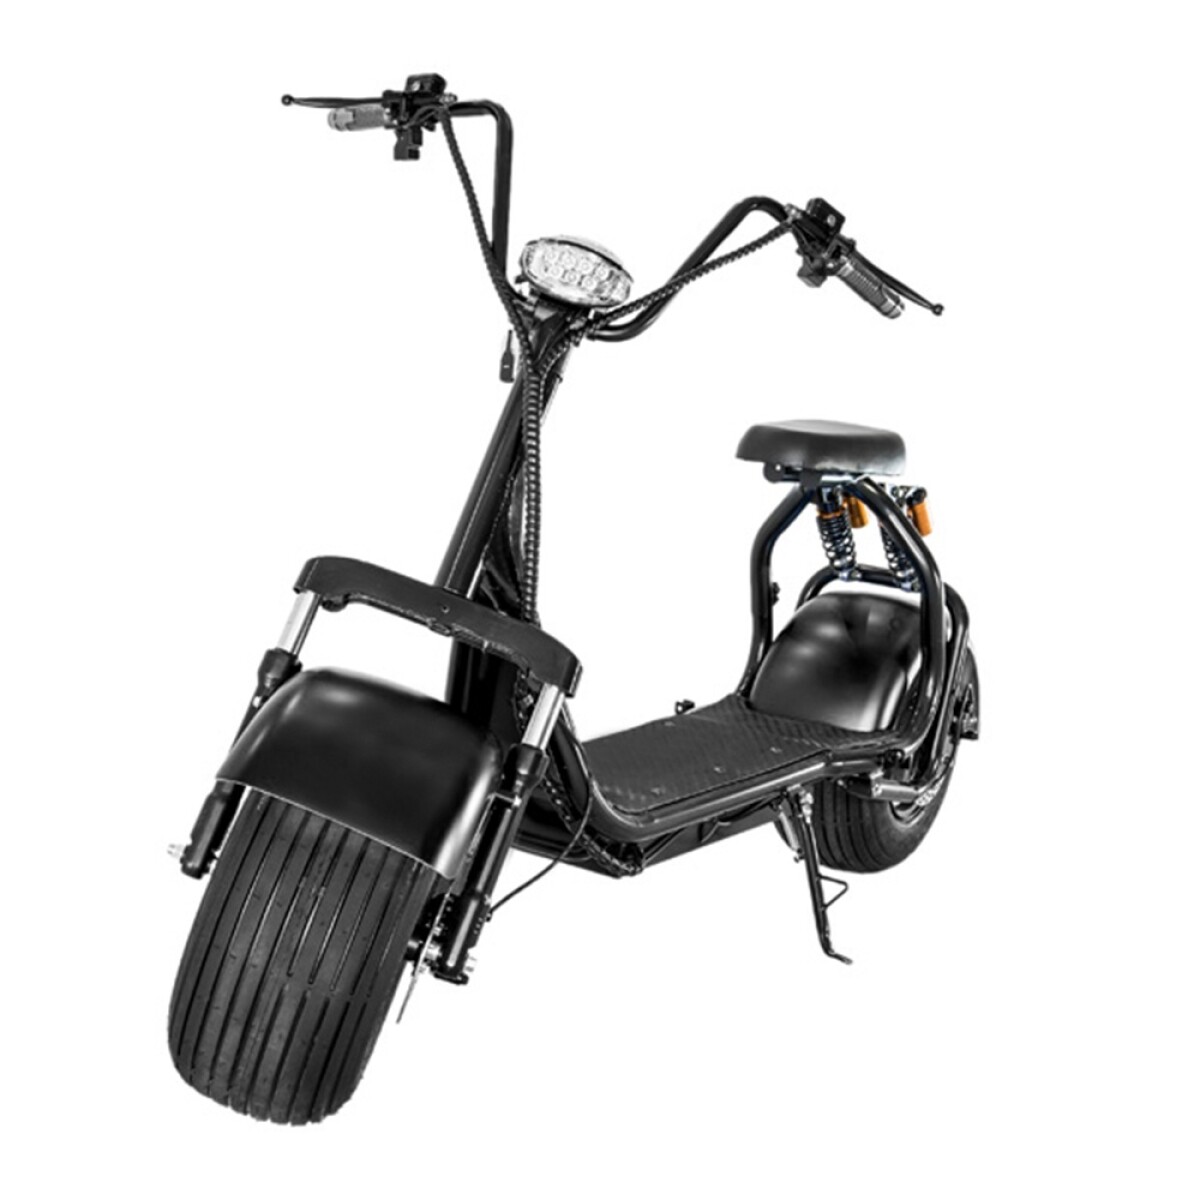 Moto Eléctrica Choppera Doble Suspensión Rodado 18 - Negro 